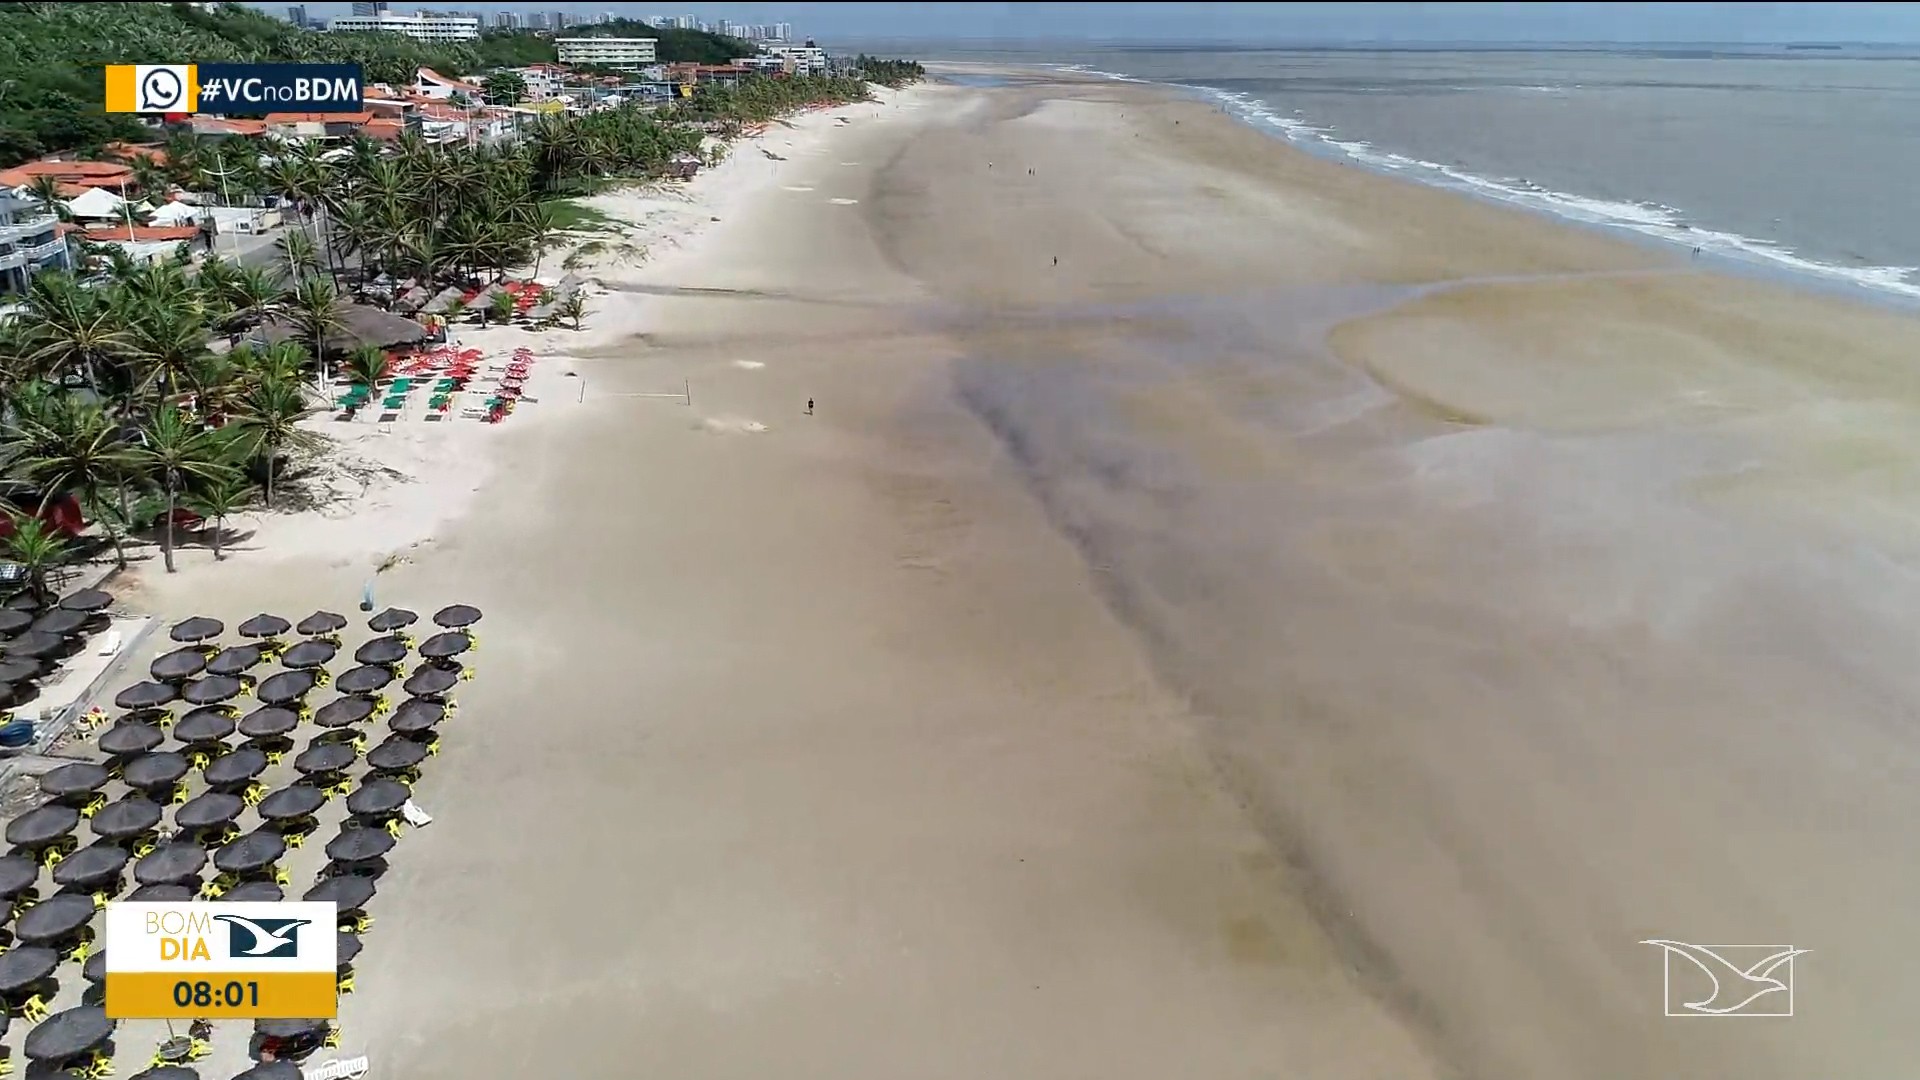 
Areia das praias de São Luís está poluída, apontam pesquisadores